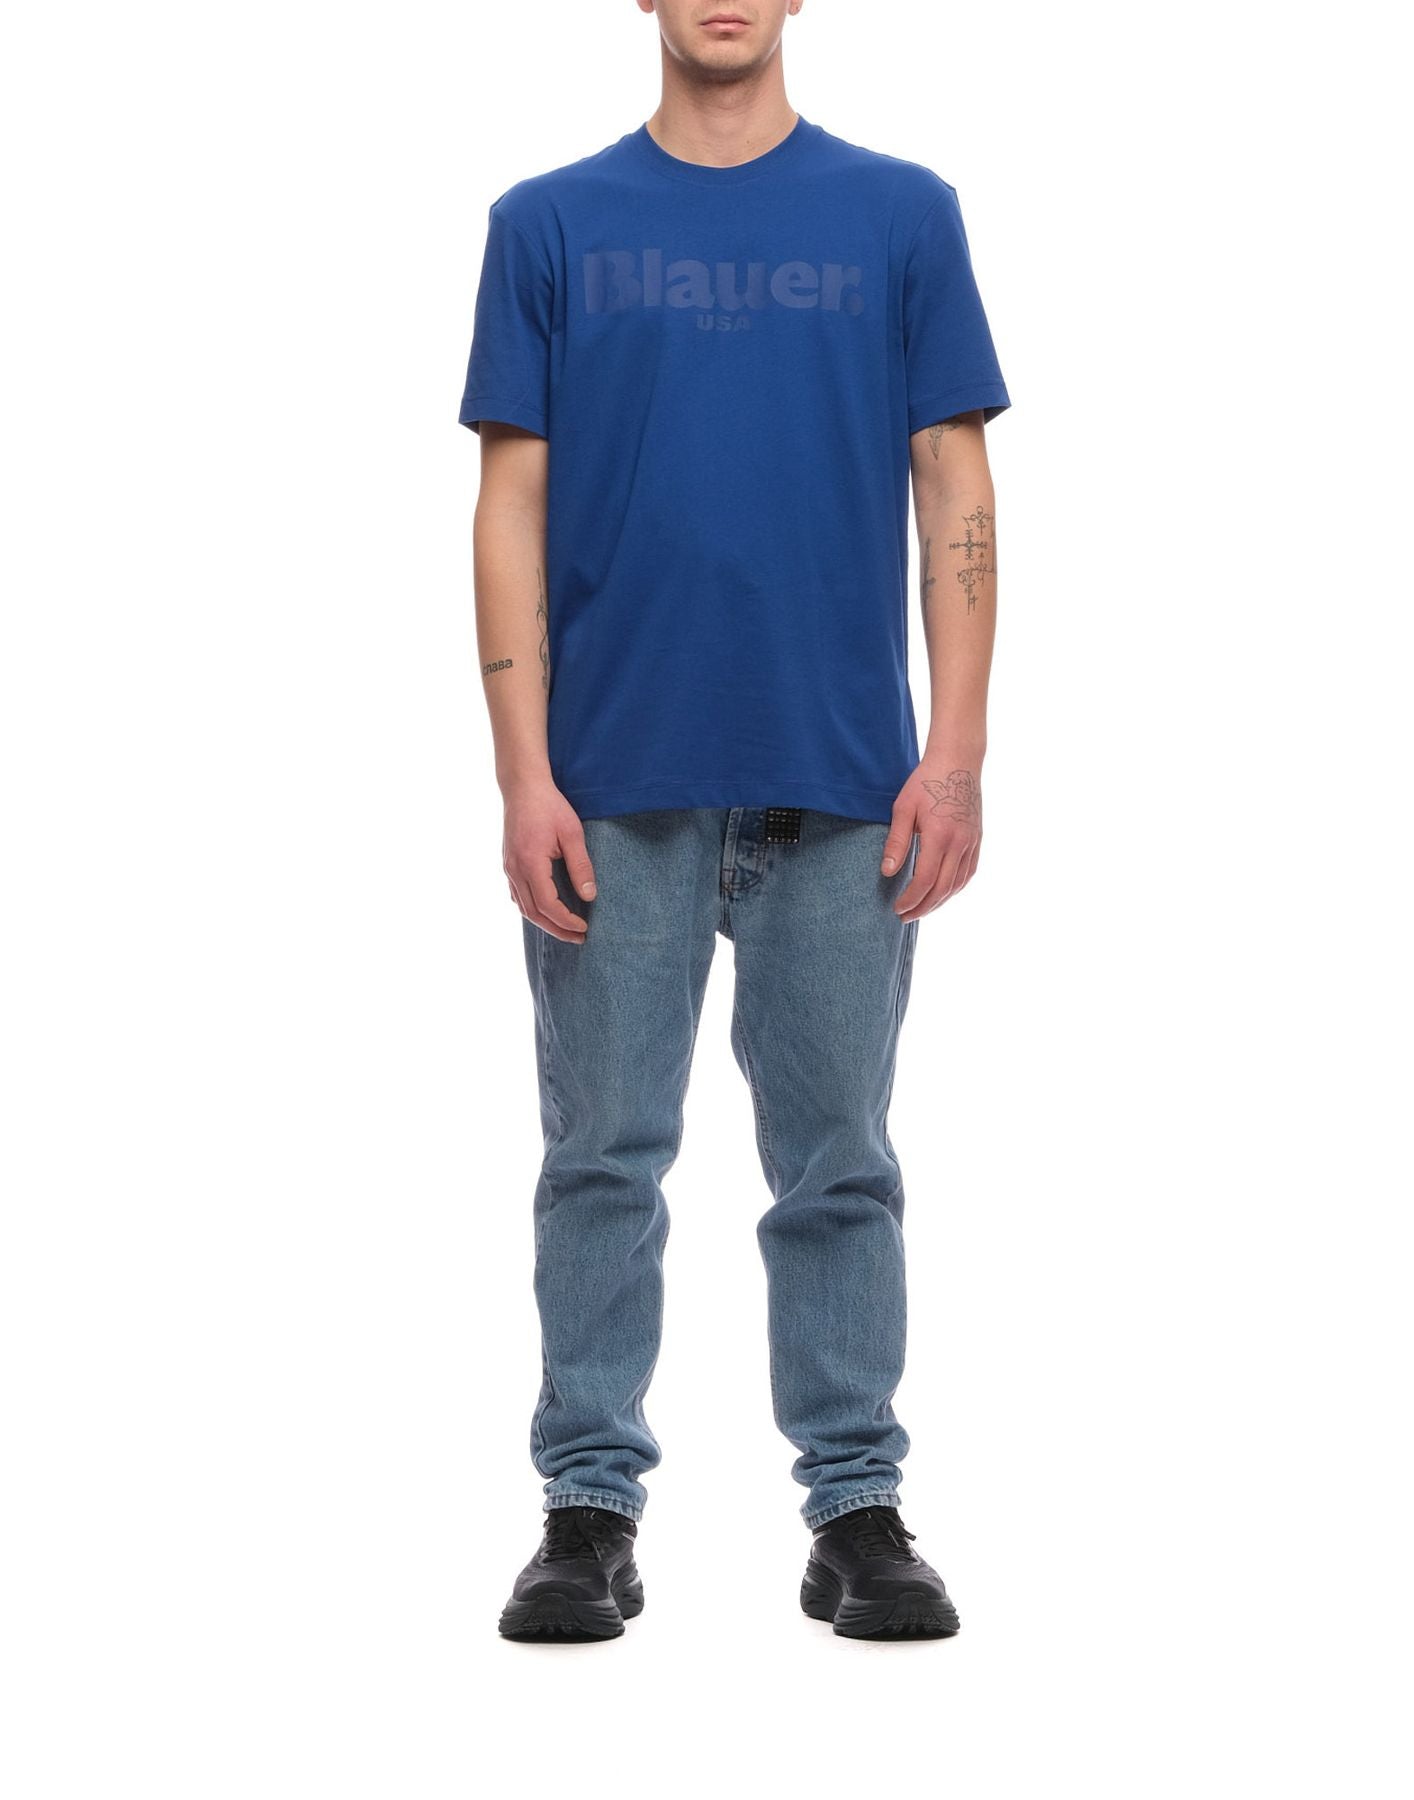 Camiseta para el hombre Bluh02094 004547 772 Blauer